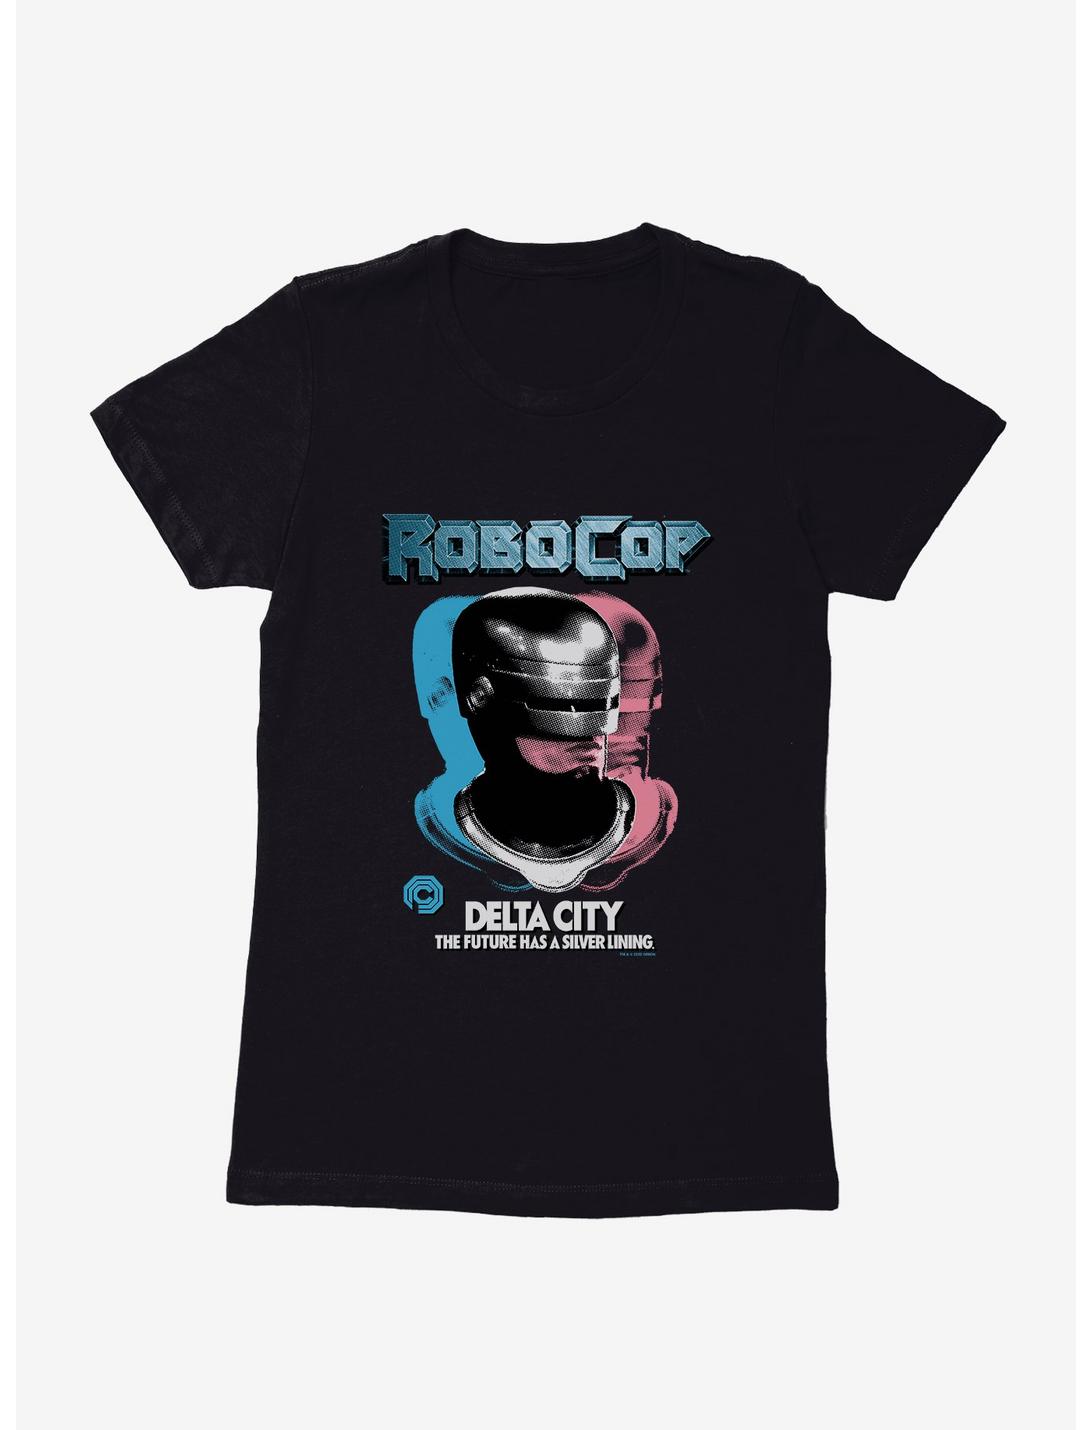 Robocop Delta City: The Future Has A Silver Lining Womens T-Shirt, BLACK, hi-res